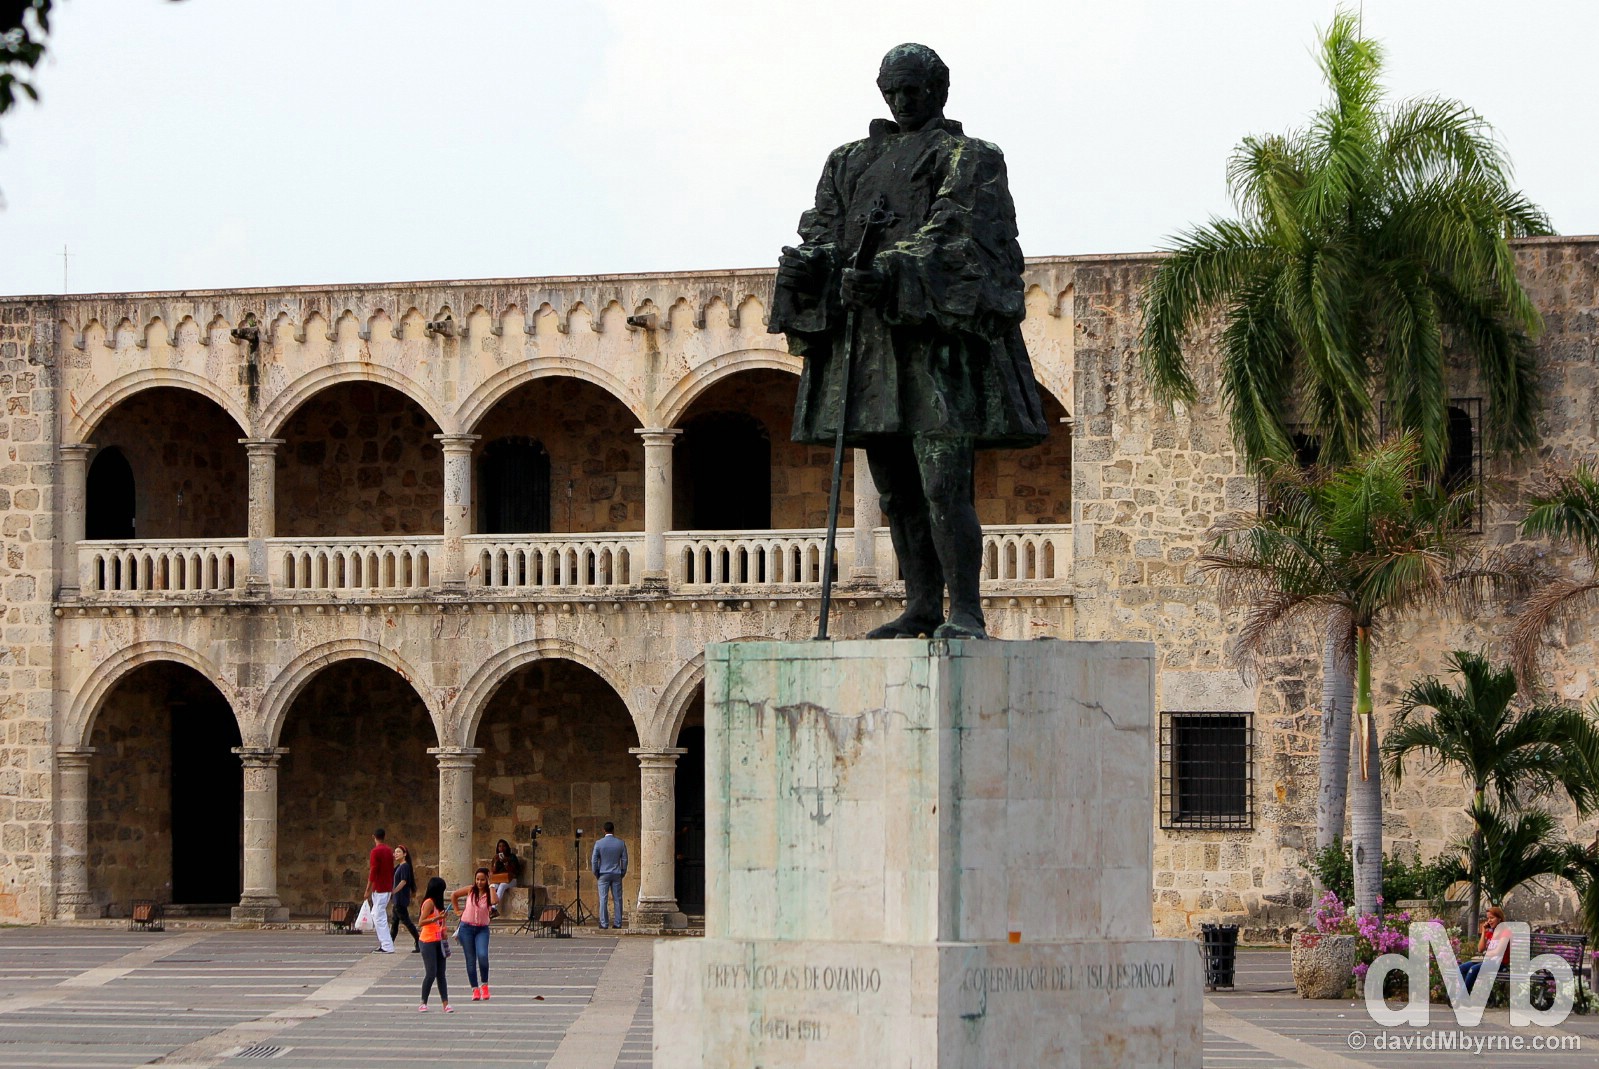 Plaza Espana, Santo Domingo, Dominican Republic.May 24, 2015.